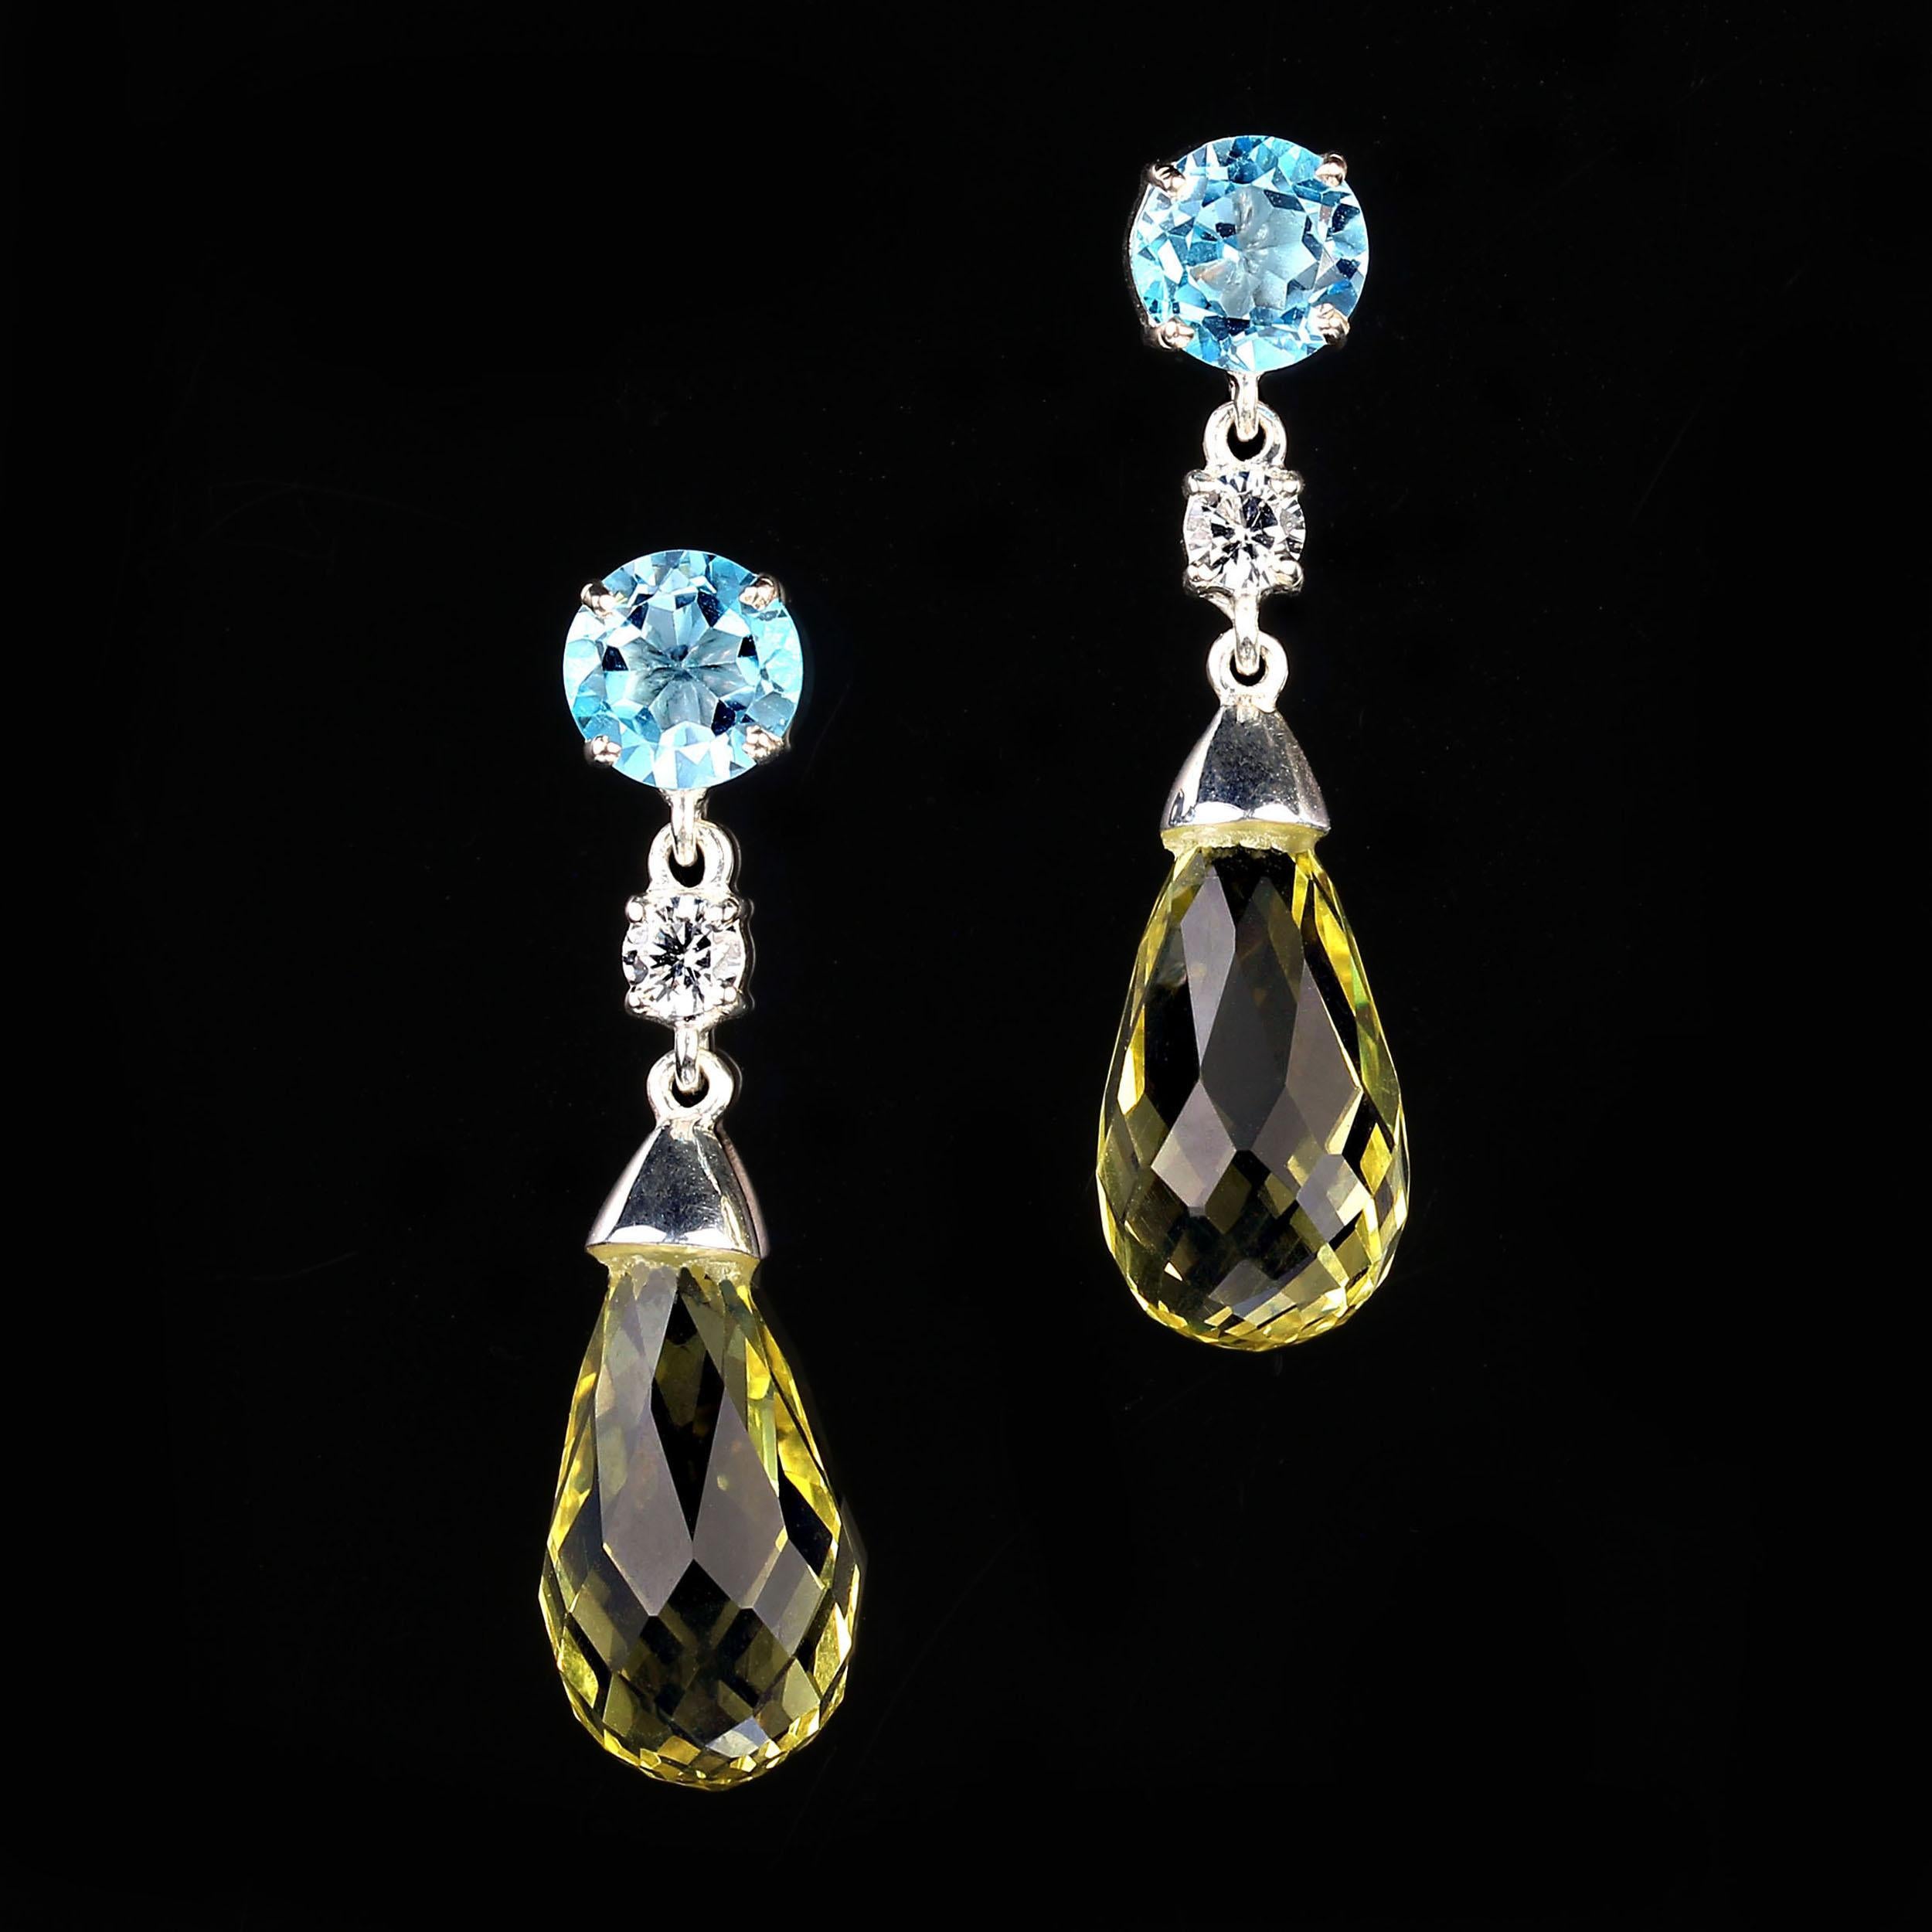 Artisan AJD Elegant Dangle Lemon Quartz and Blue Topaz Sterling Silver Earrings